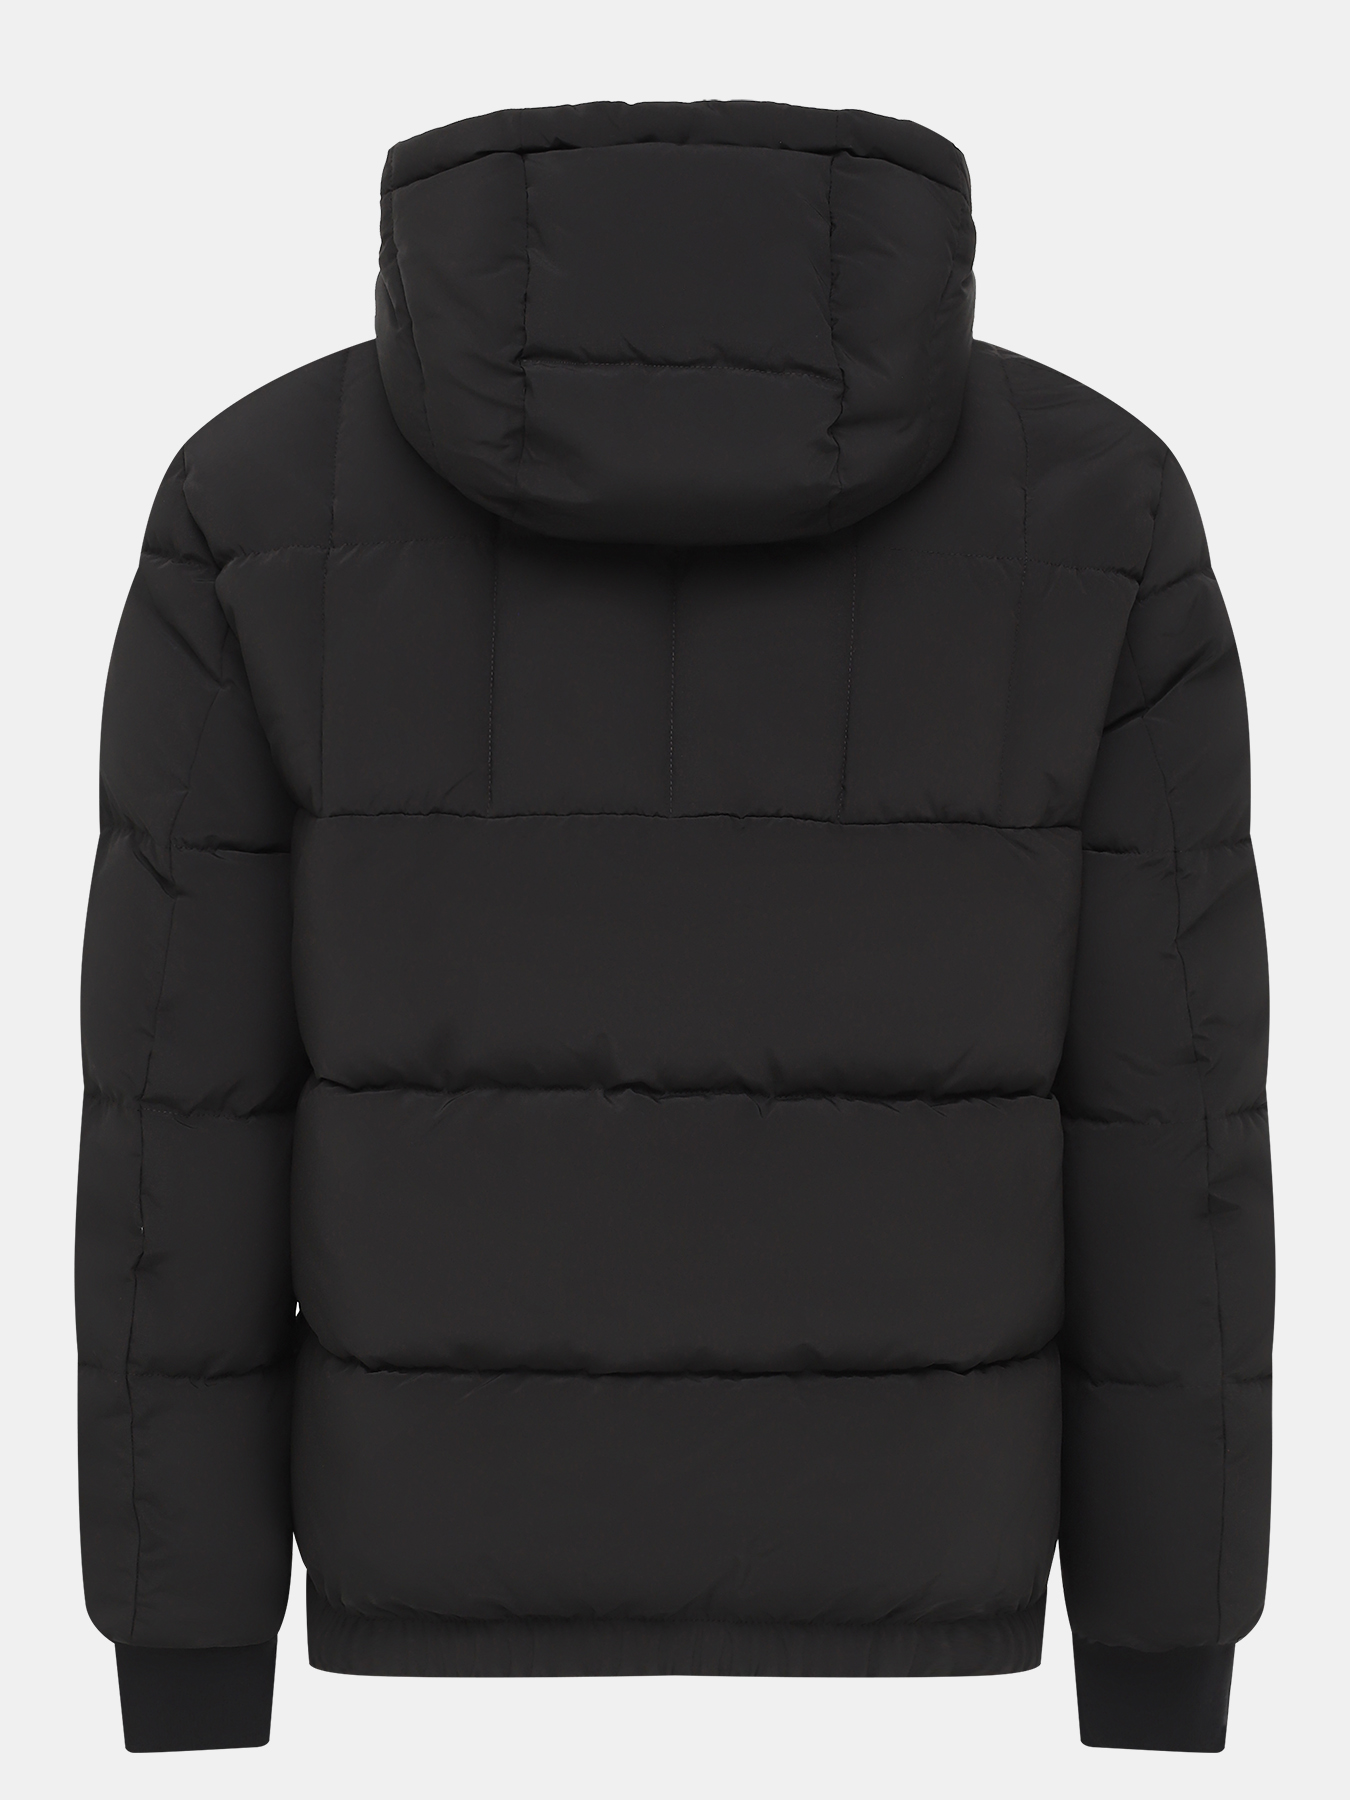 Куртка Balin HUGO 434495-045, цвет черный, размер 52-54 - фото 3